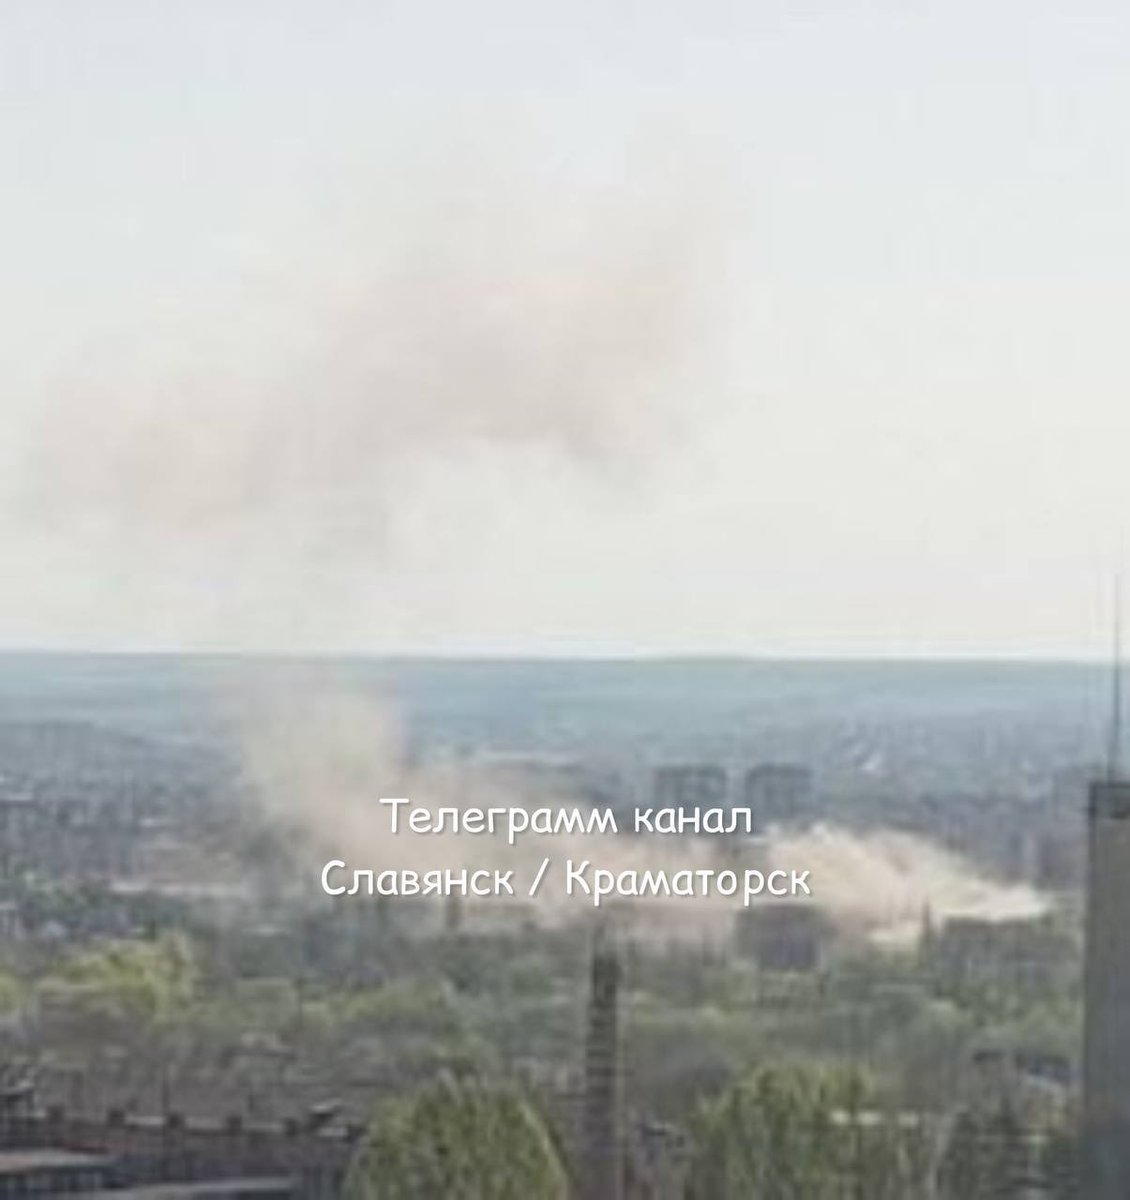 Targets in Konstantinovka and Slavyansk under attack this morning.